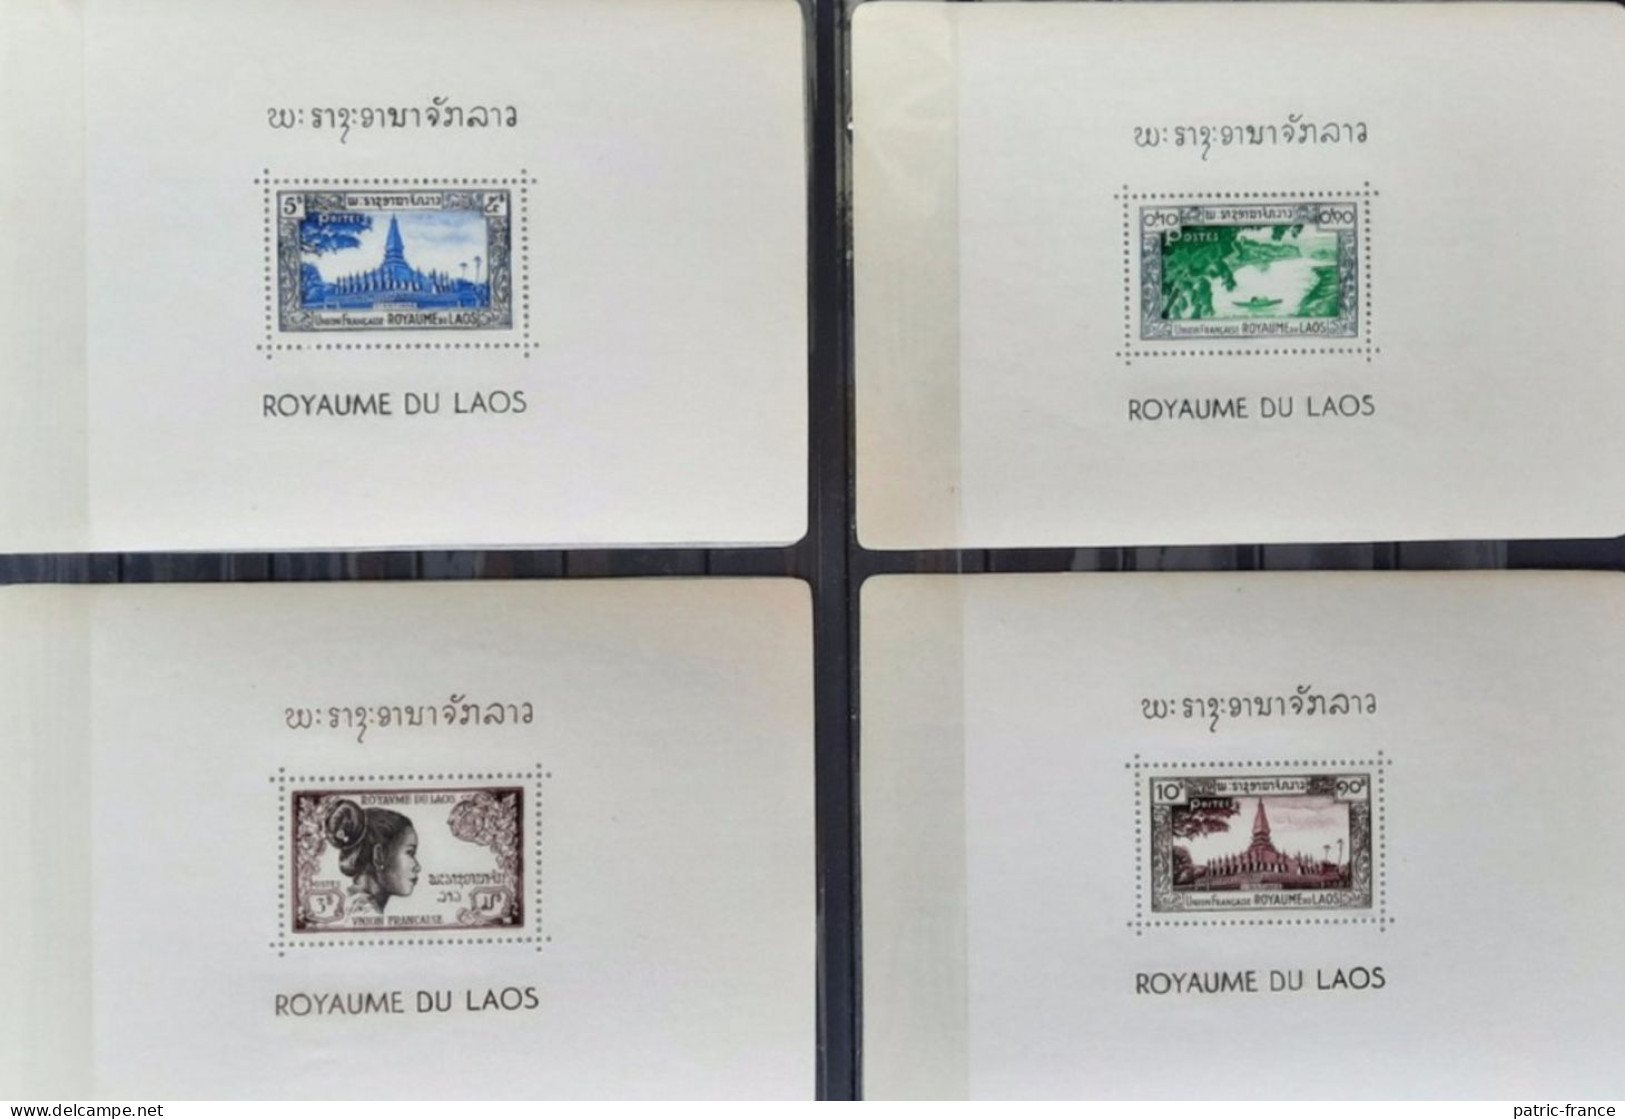 Royaume du LAOS 1951 - Carnet 26 feuillets neufs**